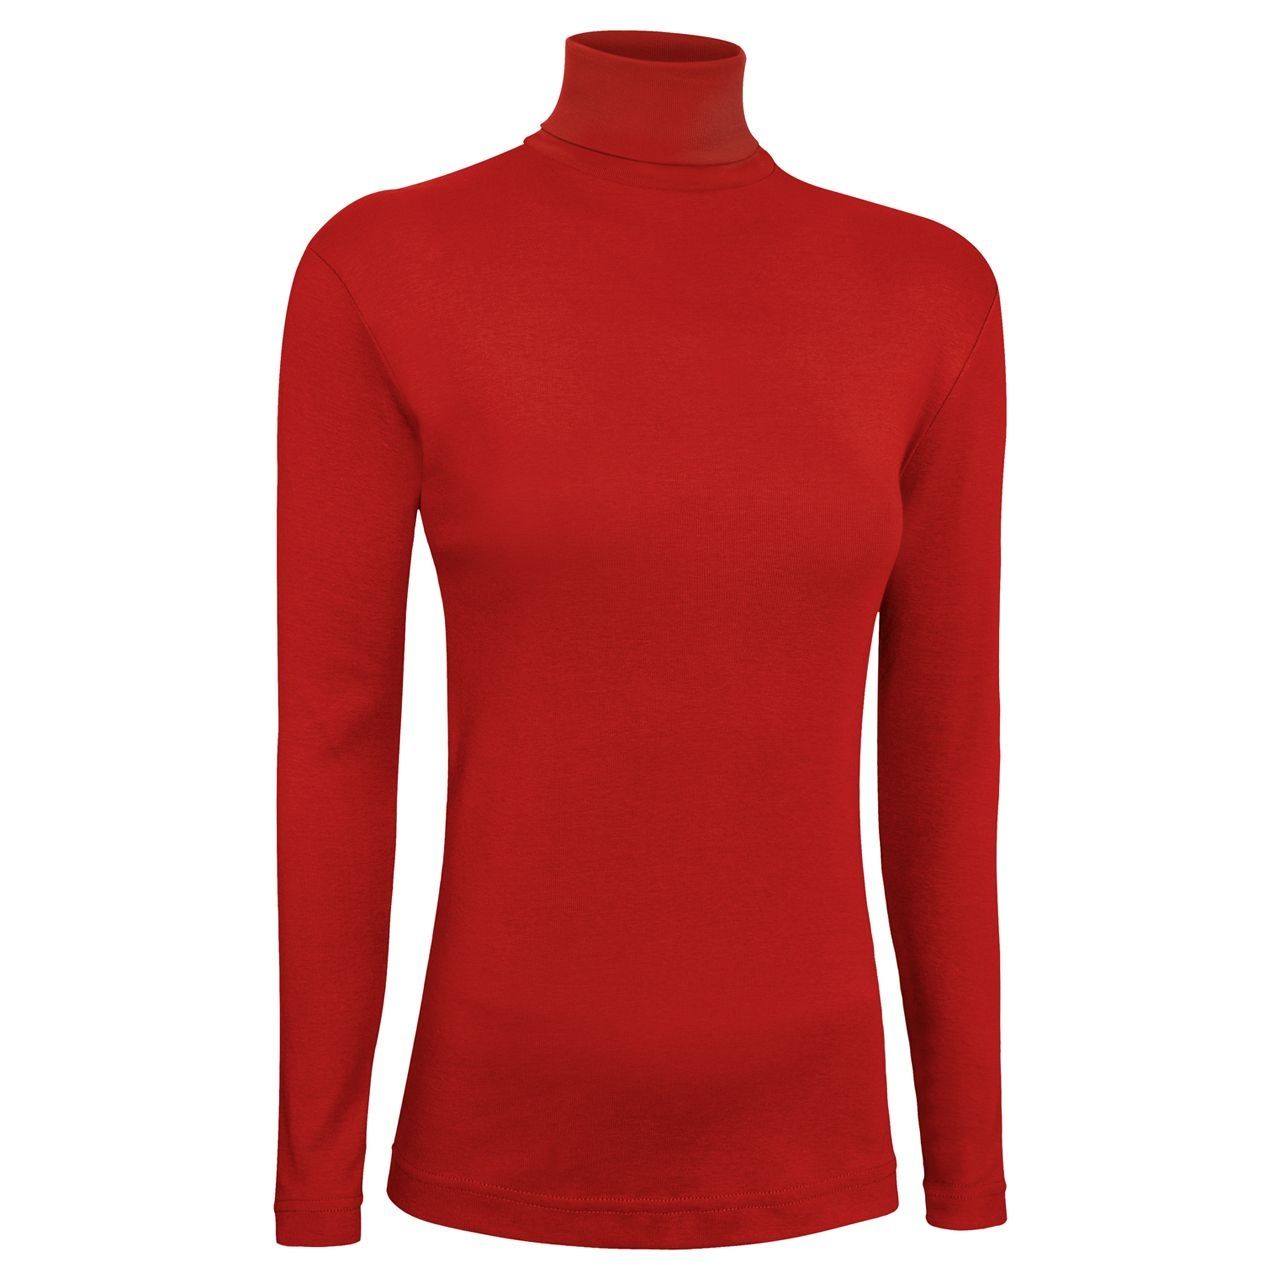 تی شرت آستین بلند زنانه ساروک مدل BZYeski06 رنگ قرمز -  - 2